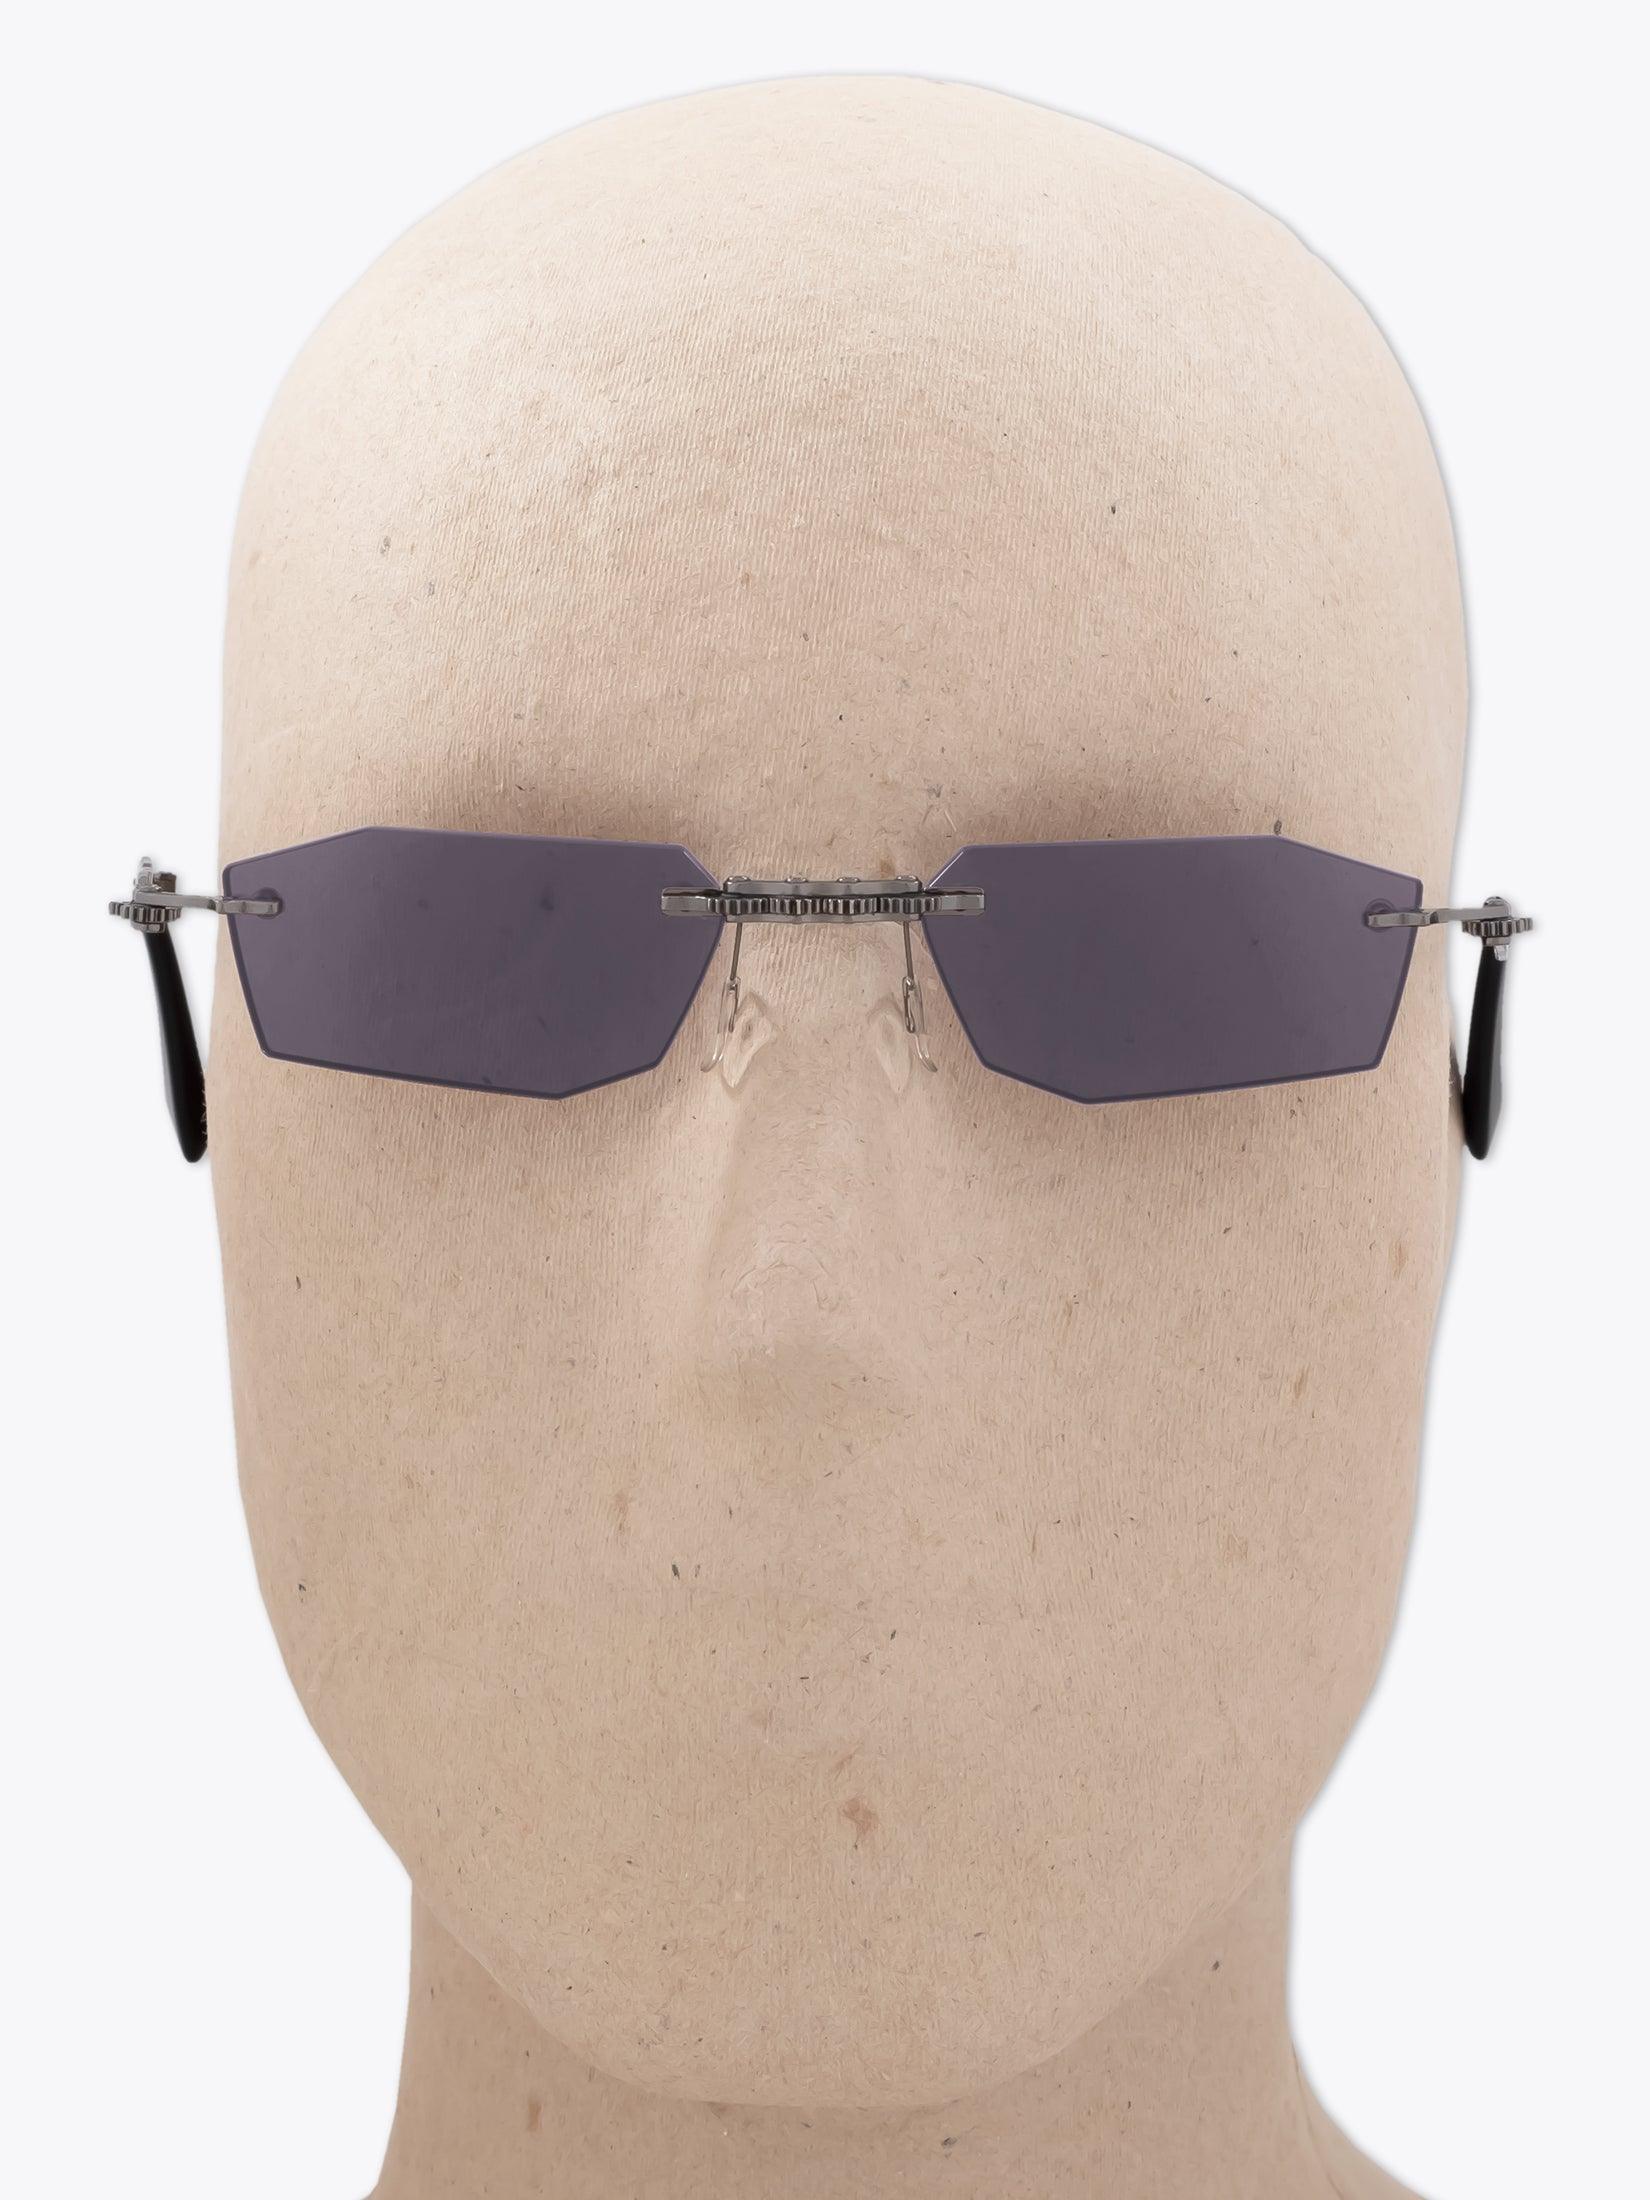 Kuboraum Mask H40 Palladium Sunglasses